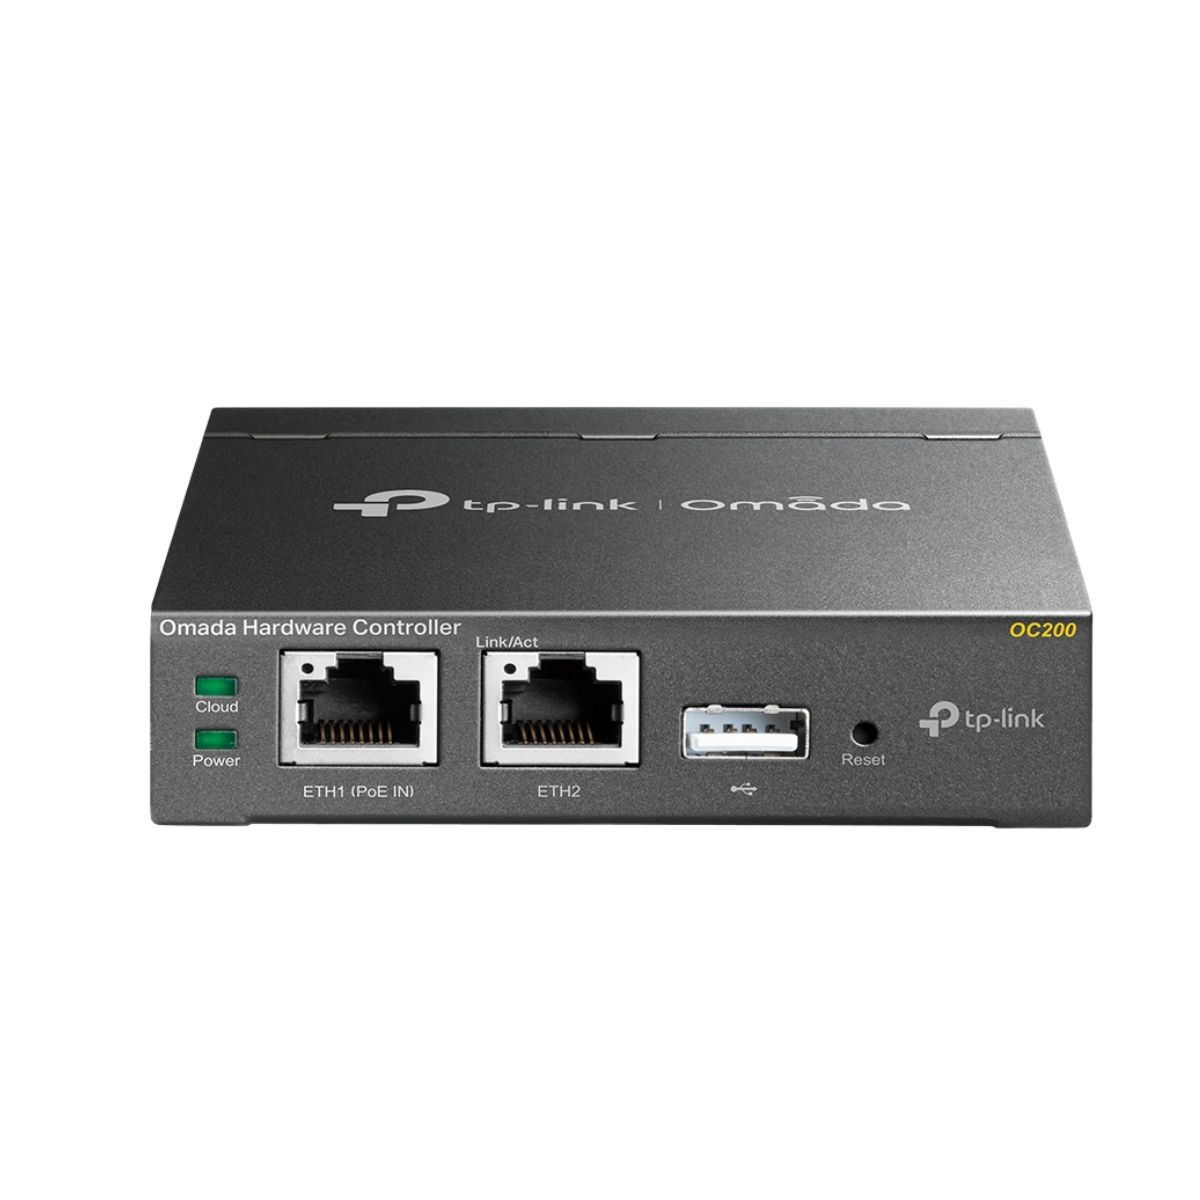 Thiết bị quản lý tập trung Omada Controller cứng TP-Link OC200 quản lý đến 100 điểm truy cập, Hỗ trợ PoE 